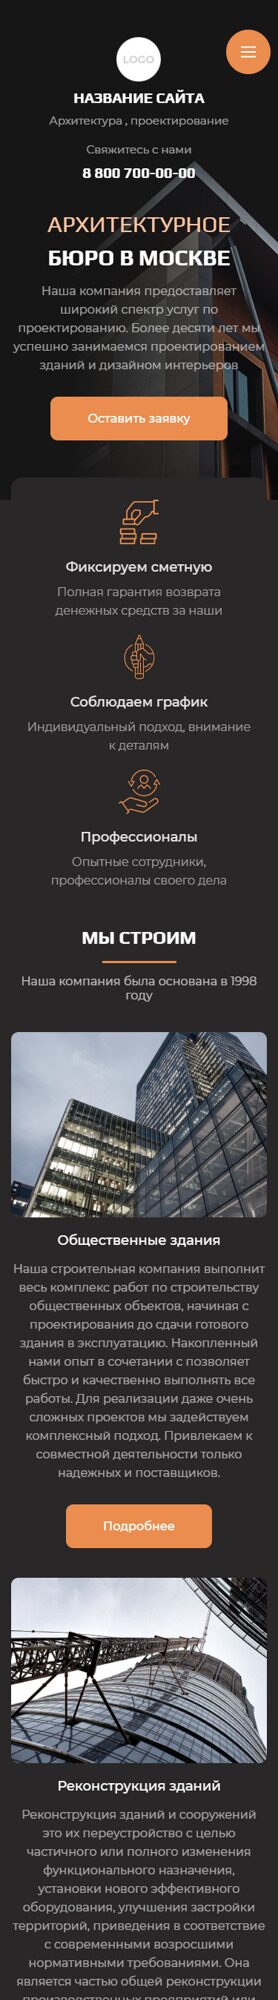 Готовый Сайт-Бизнес № 3935104 - Архитектура, дизайн, проектирование (Мобильная версия)